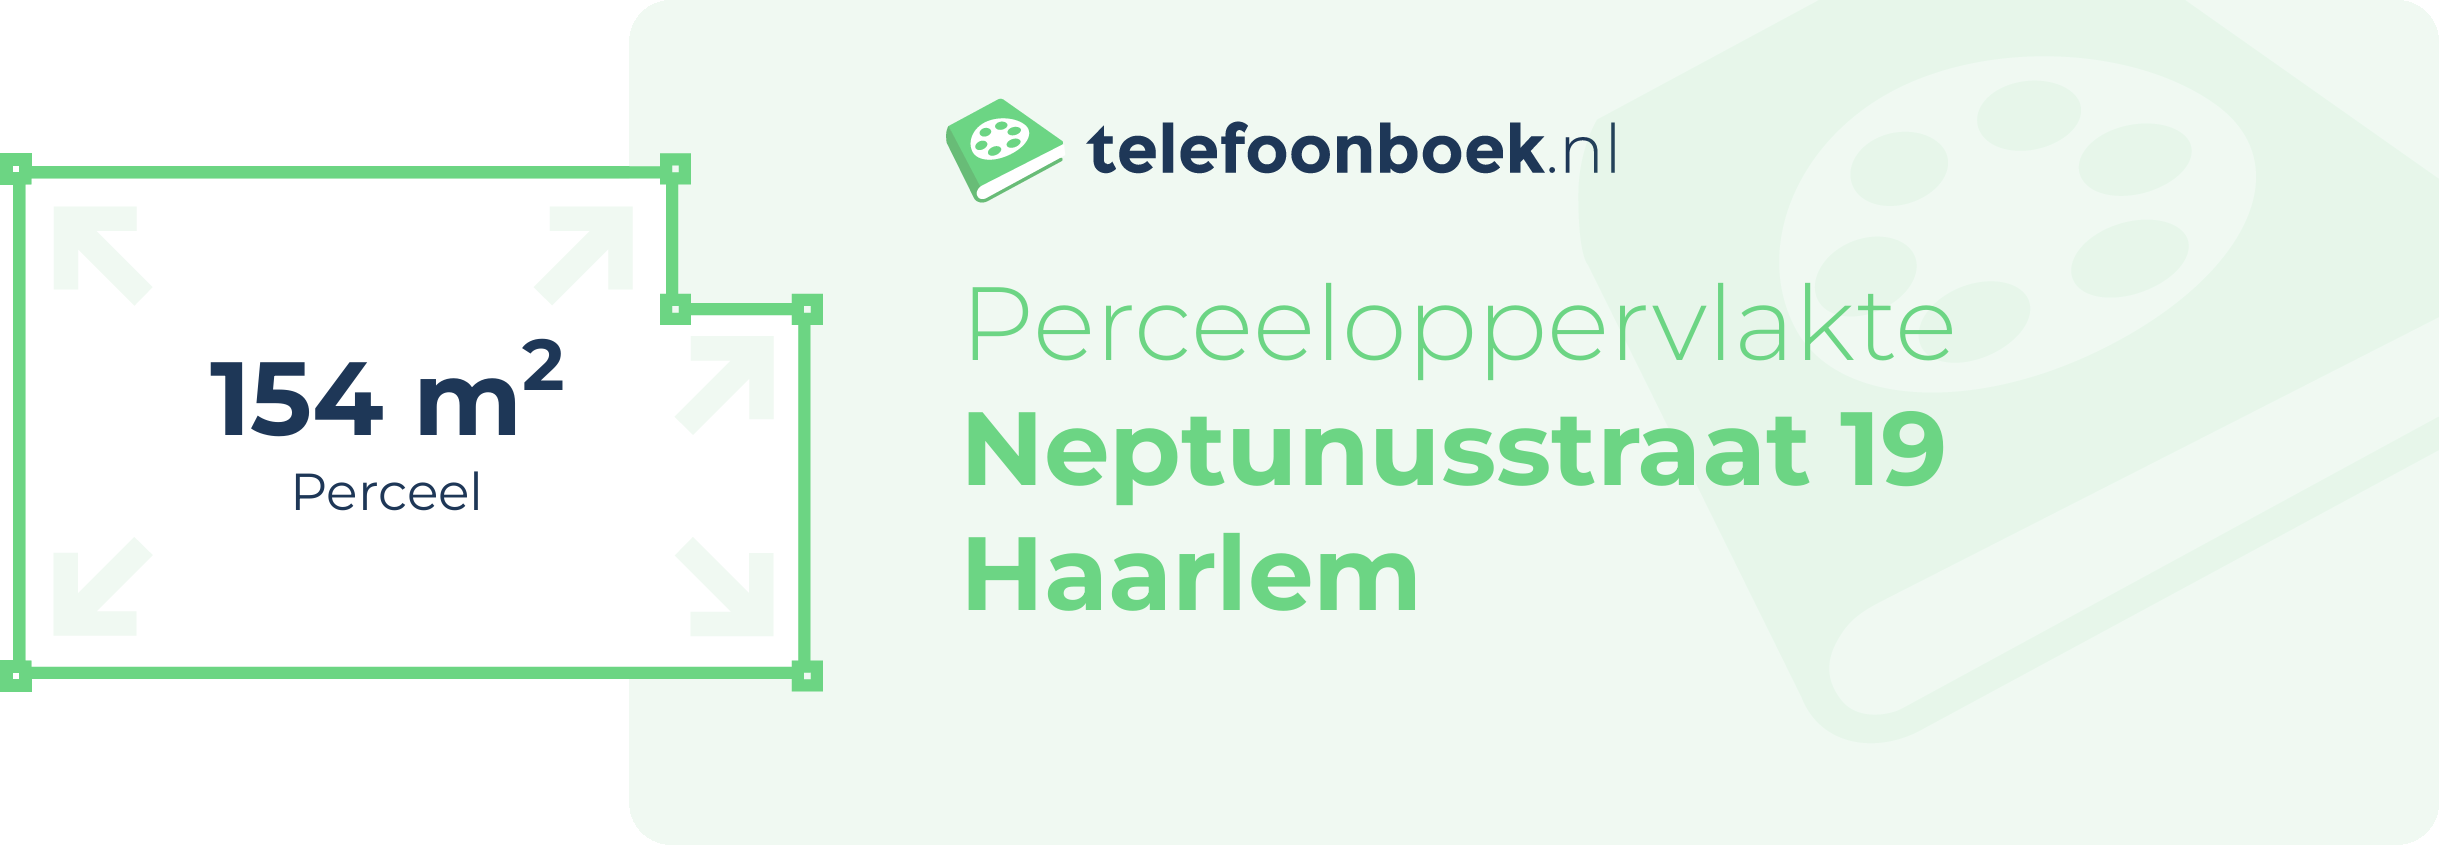 Perceeloppervlakte Neptunusstraat 19 Haarlem